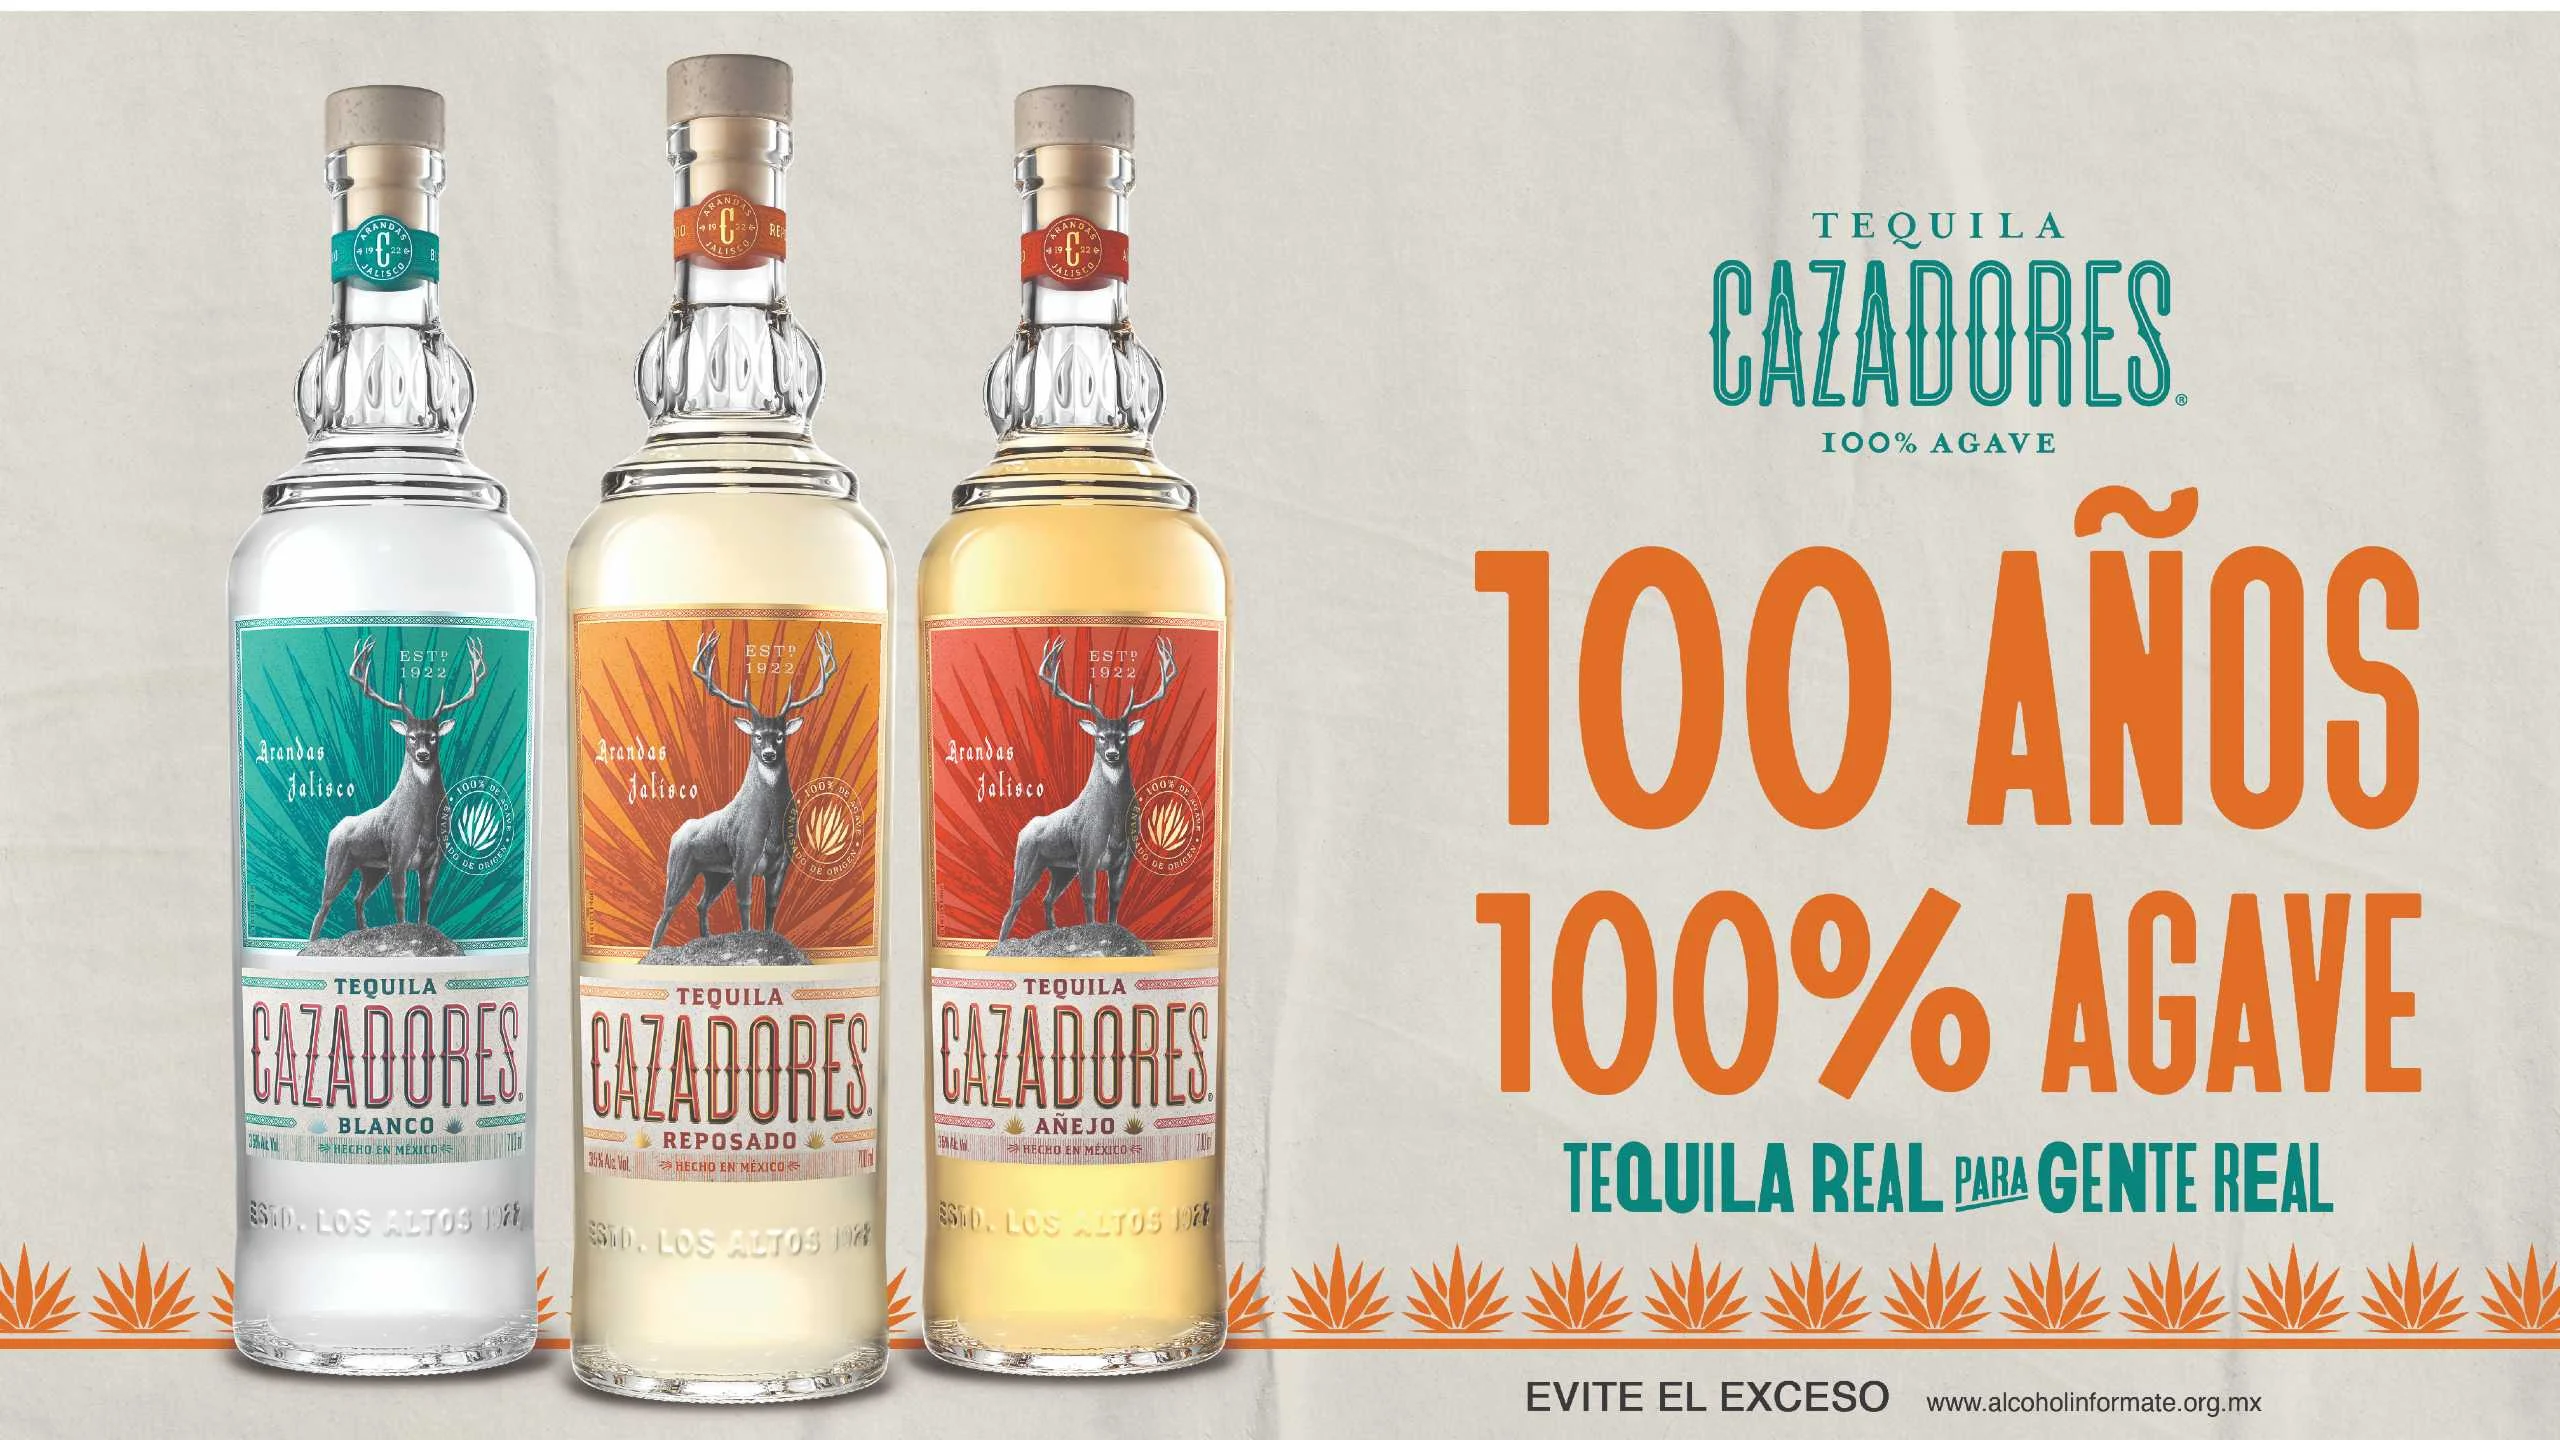 Tequila Cazadores celebra 100 años de trayectoria